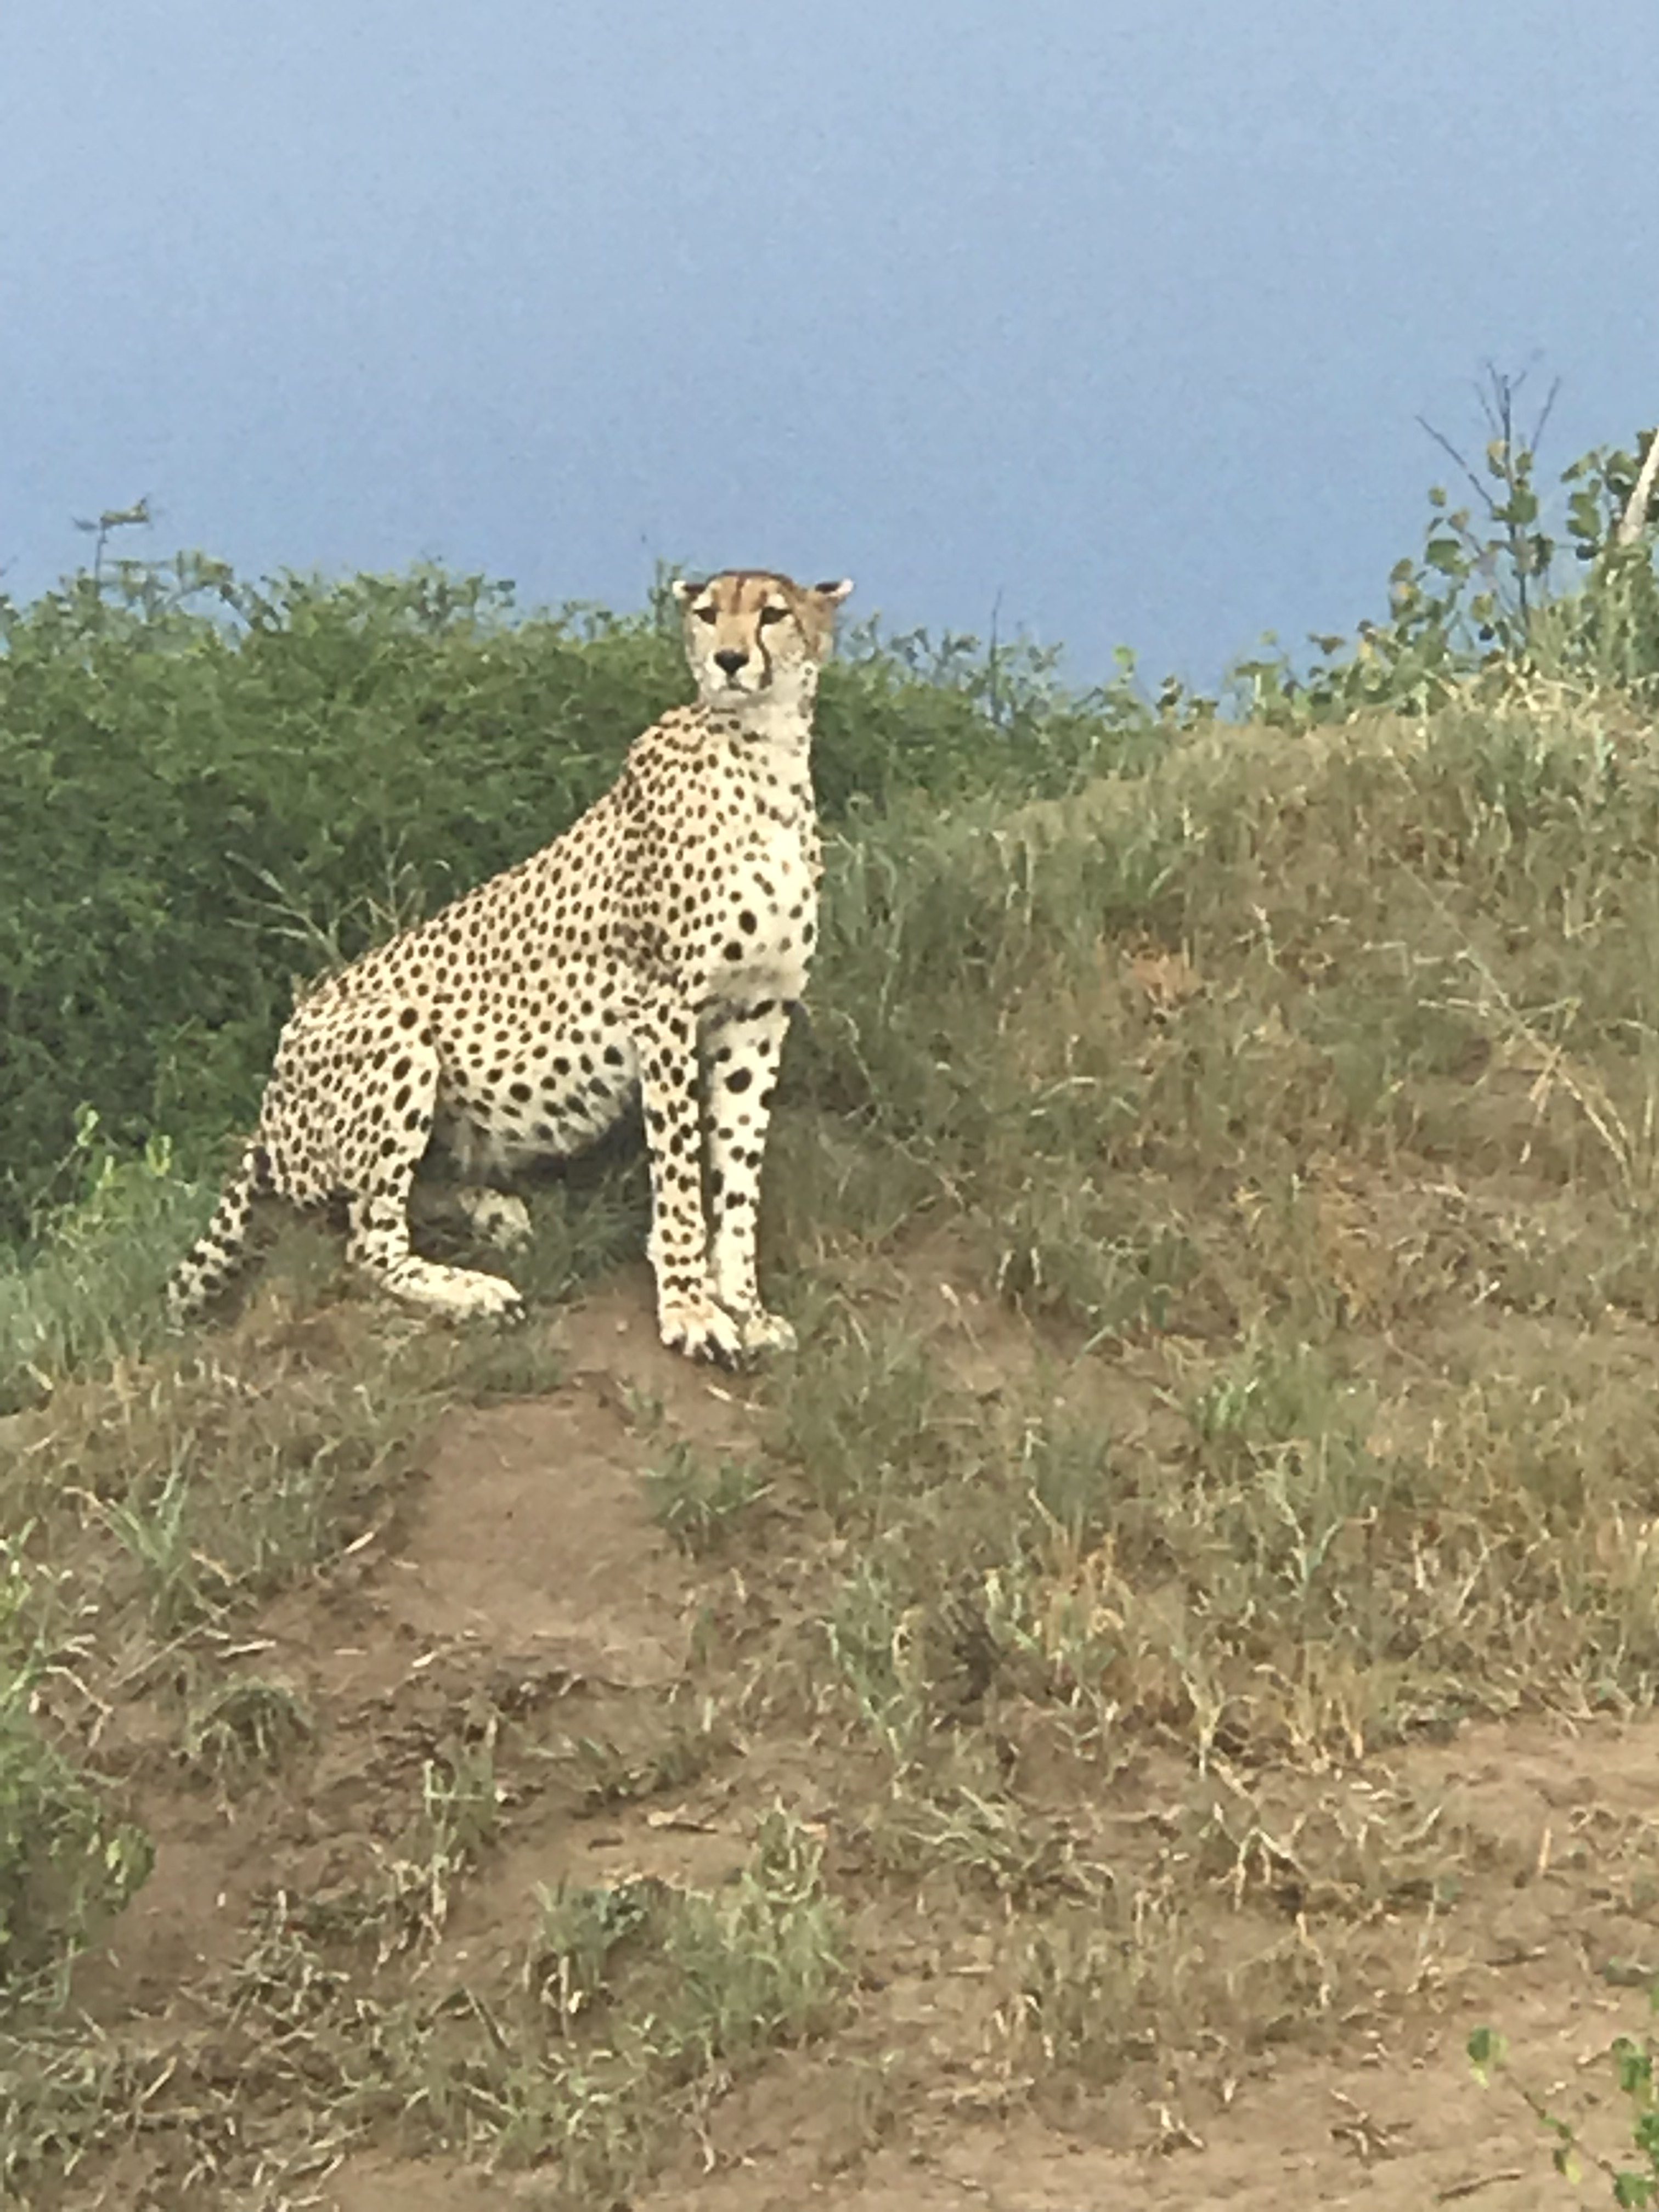 Cheetah surveying the savannah in Tarangire